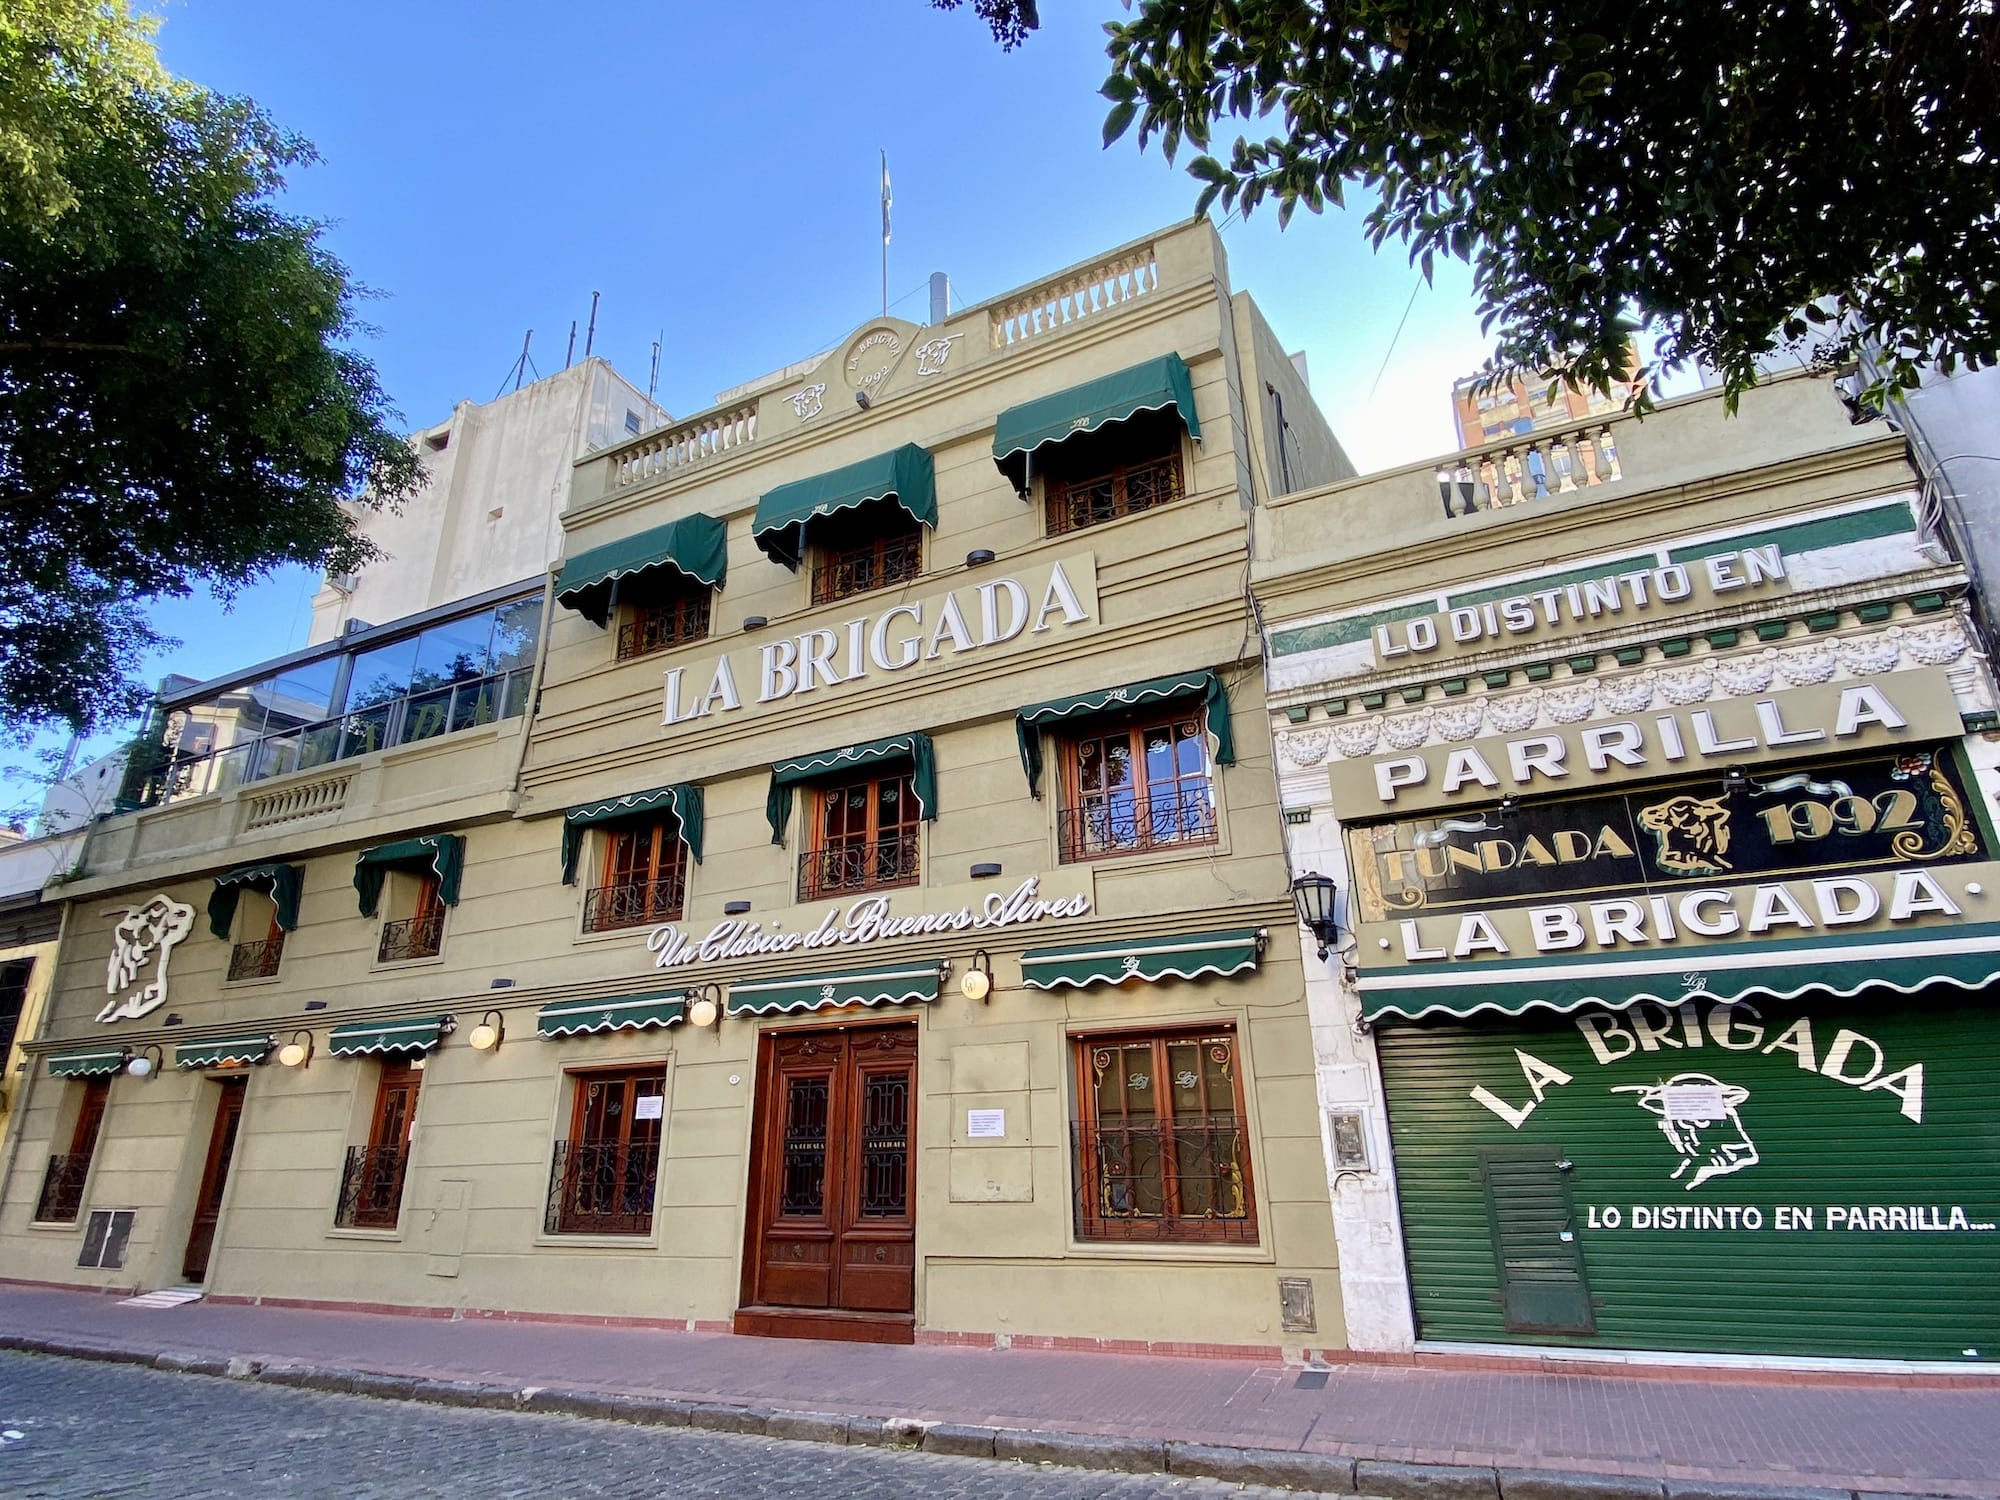 La Brigada steakhouse Buenos Aires